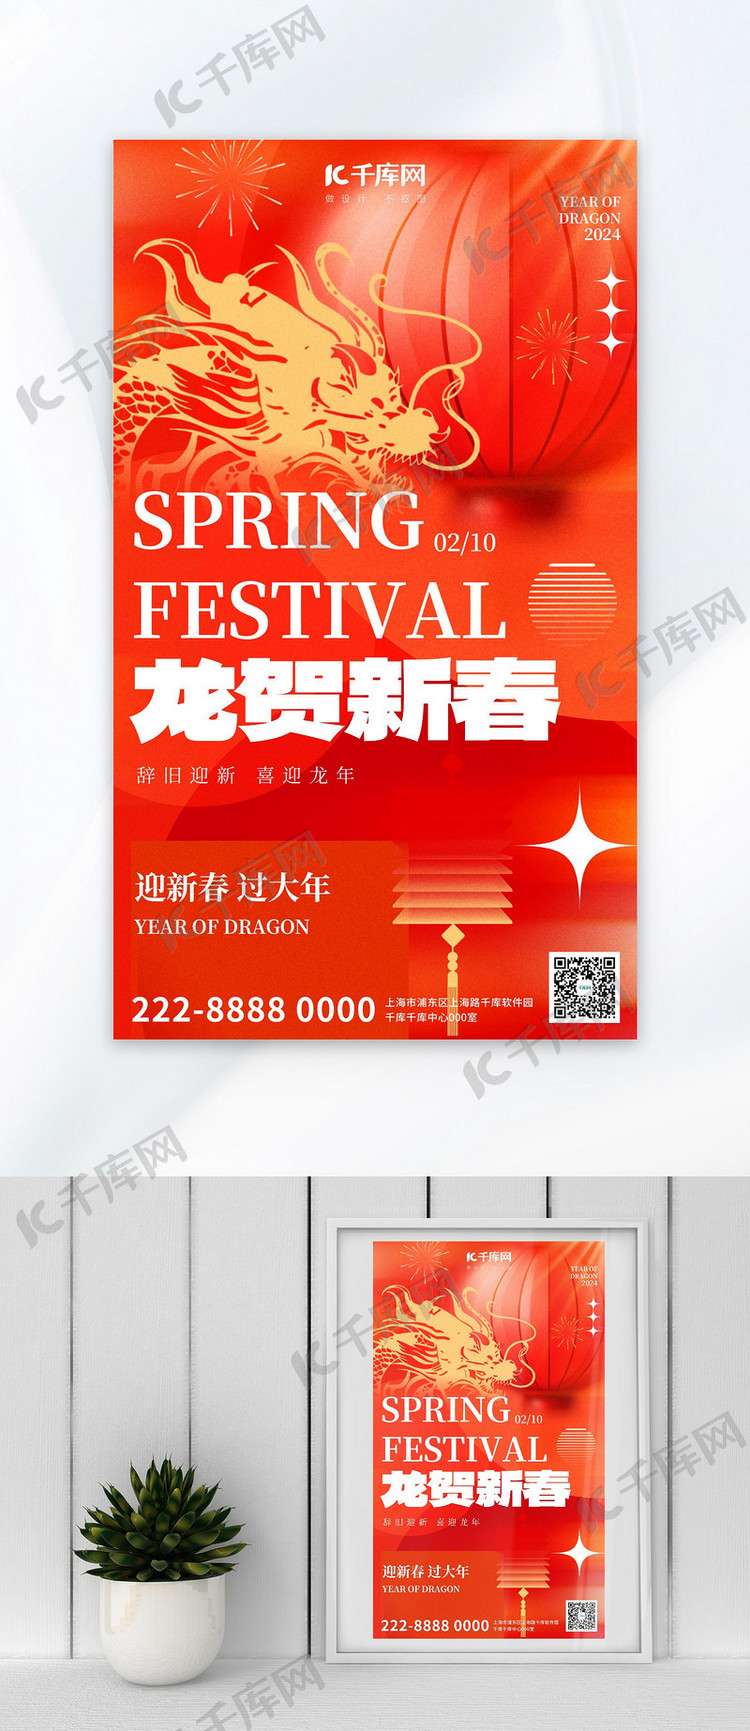 龙贺新春龙红色弥散风广告宣传海报